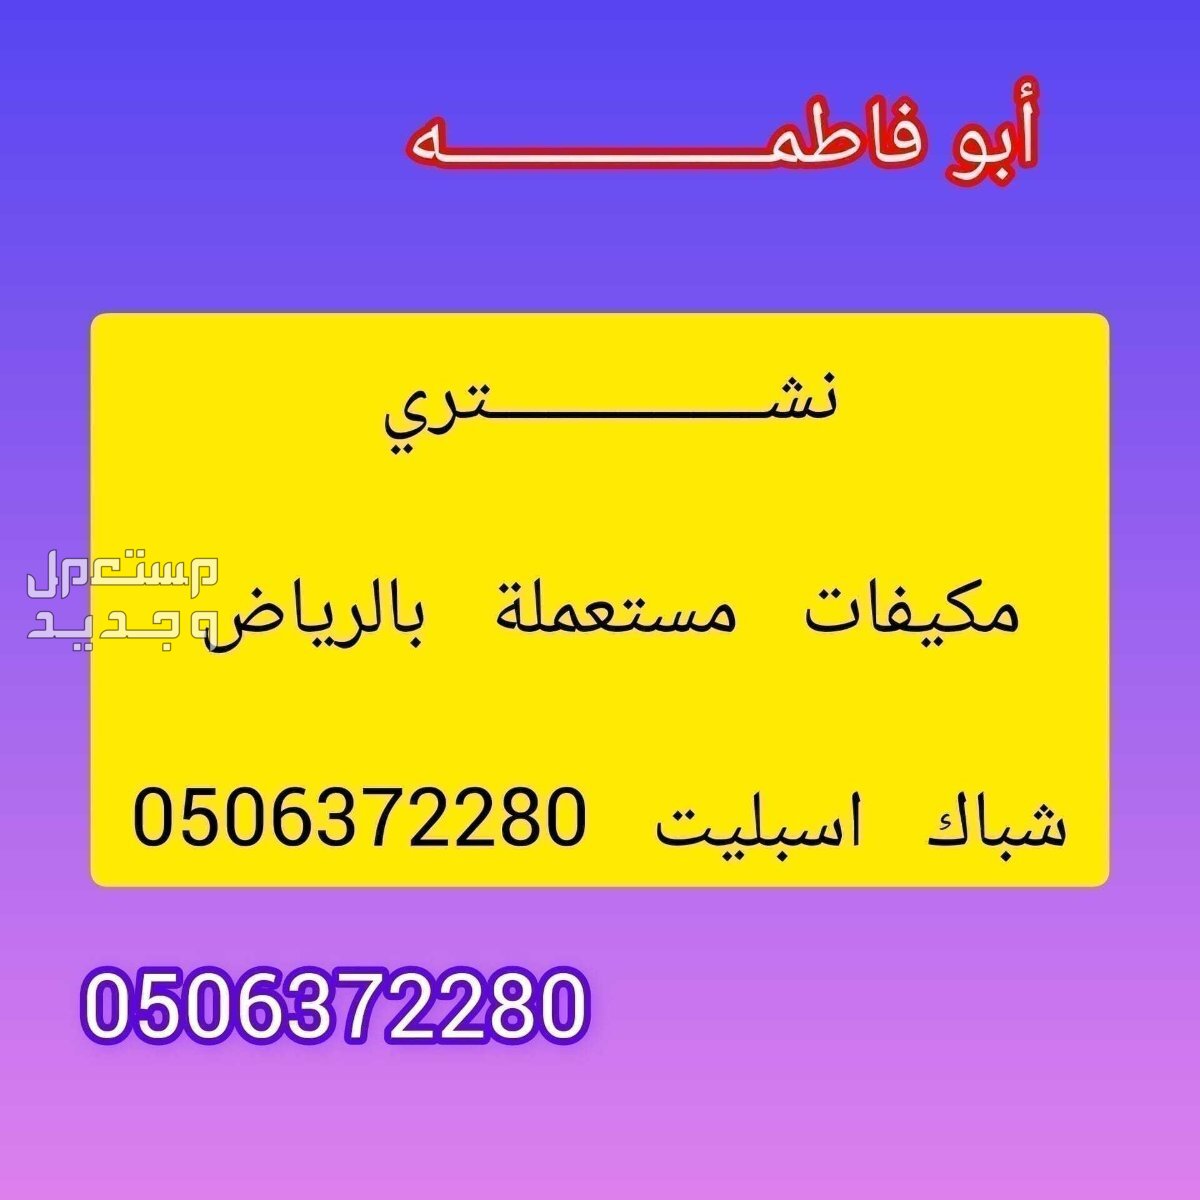 شراء مكيفات مستعملة شرق الرياض شراء مكيفات مستعملة بالرياض 0506372280